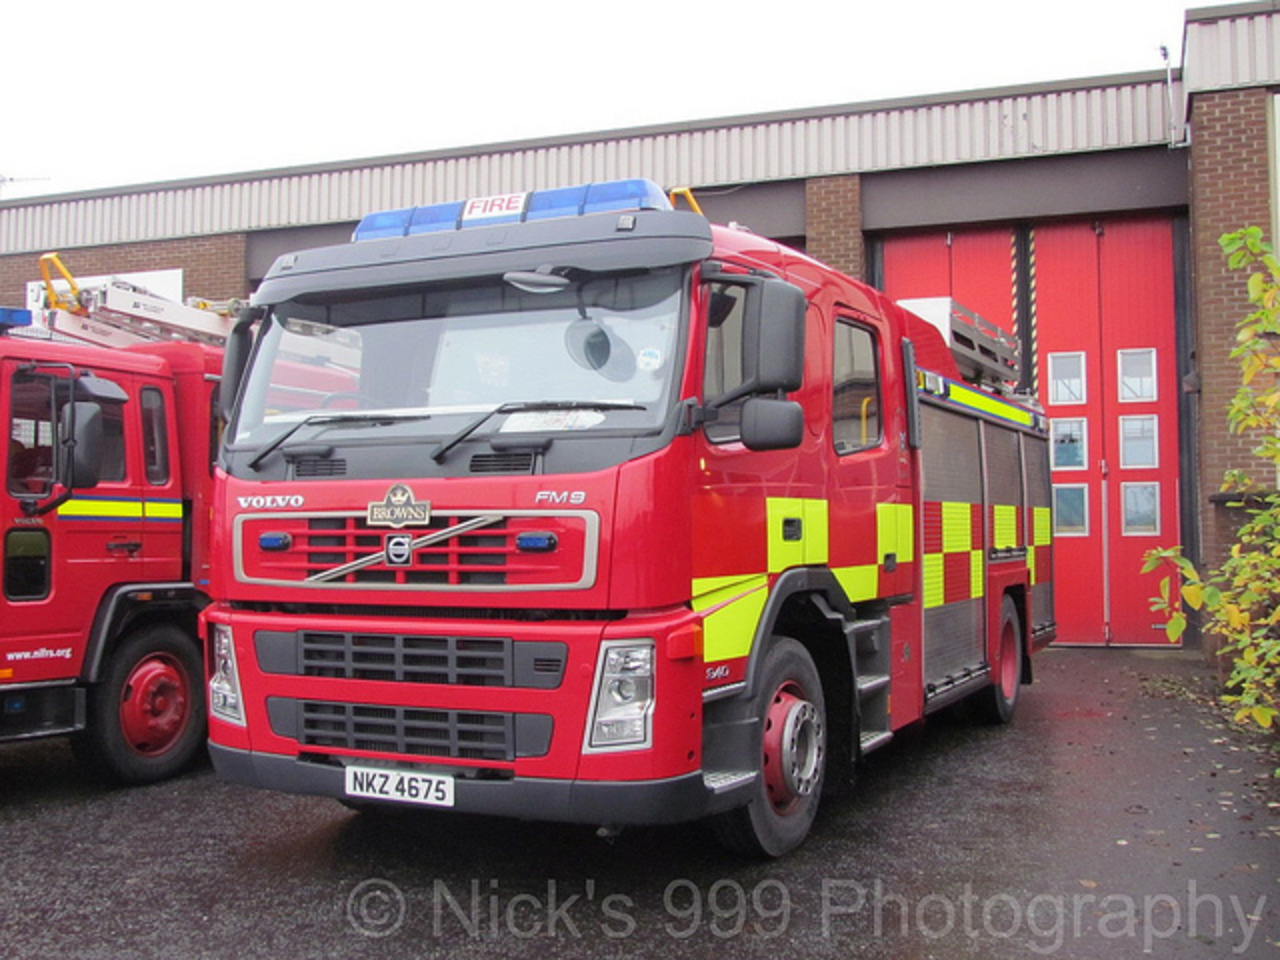 NIFRS / E2179 / NKZ 4675 / Volvo FM9-340 / Rescue Pump | Flickr ...